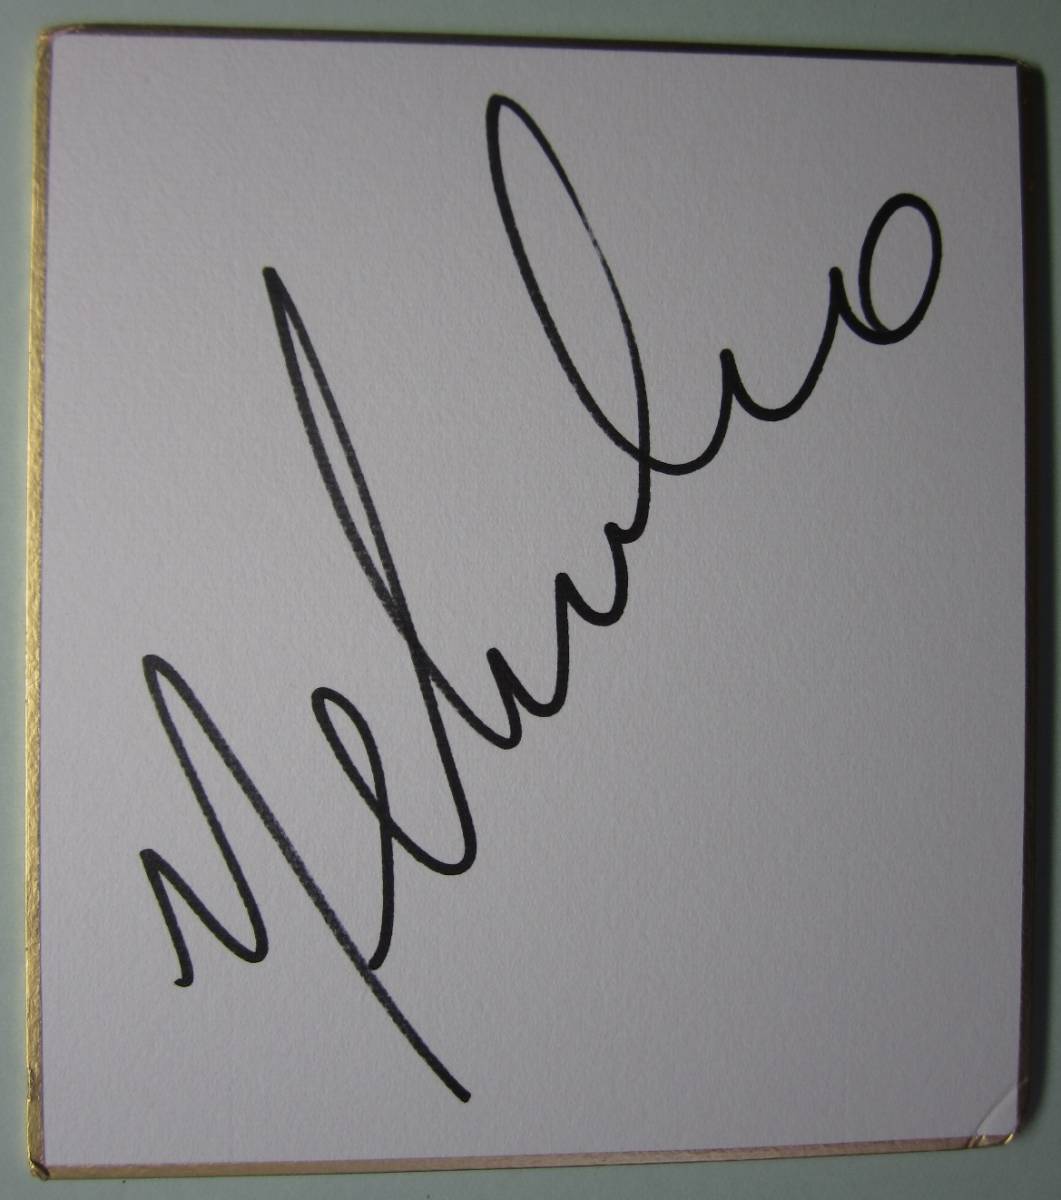 内尔西尼奥亲笔签名 - 免费送货, 足球, 纪念品, 相关商品, 符号